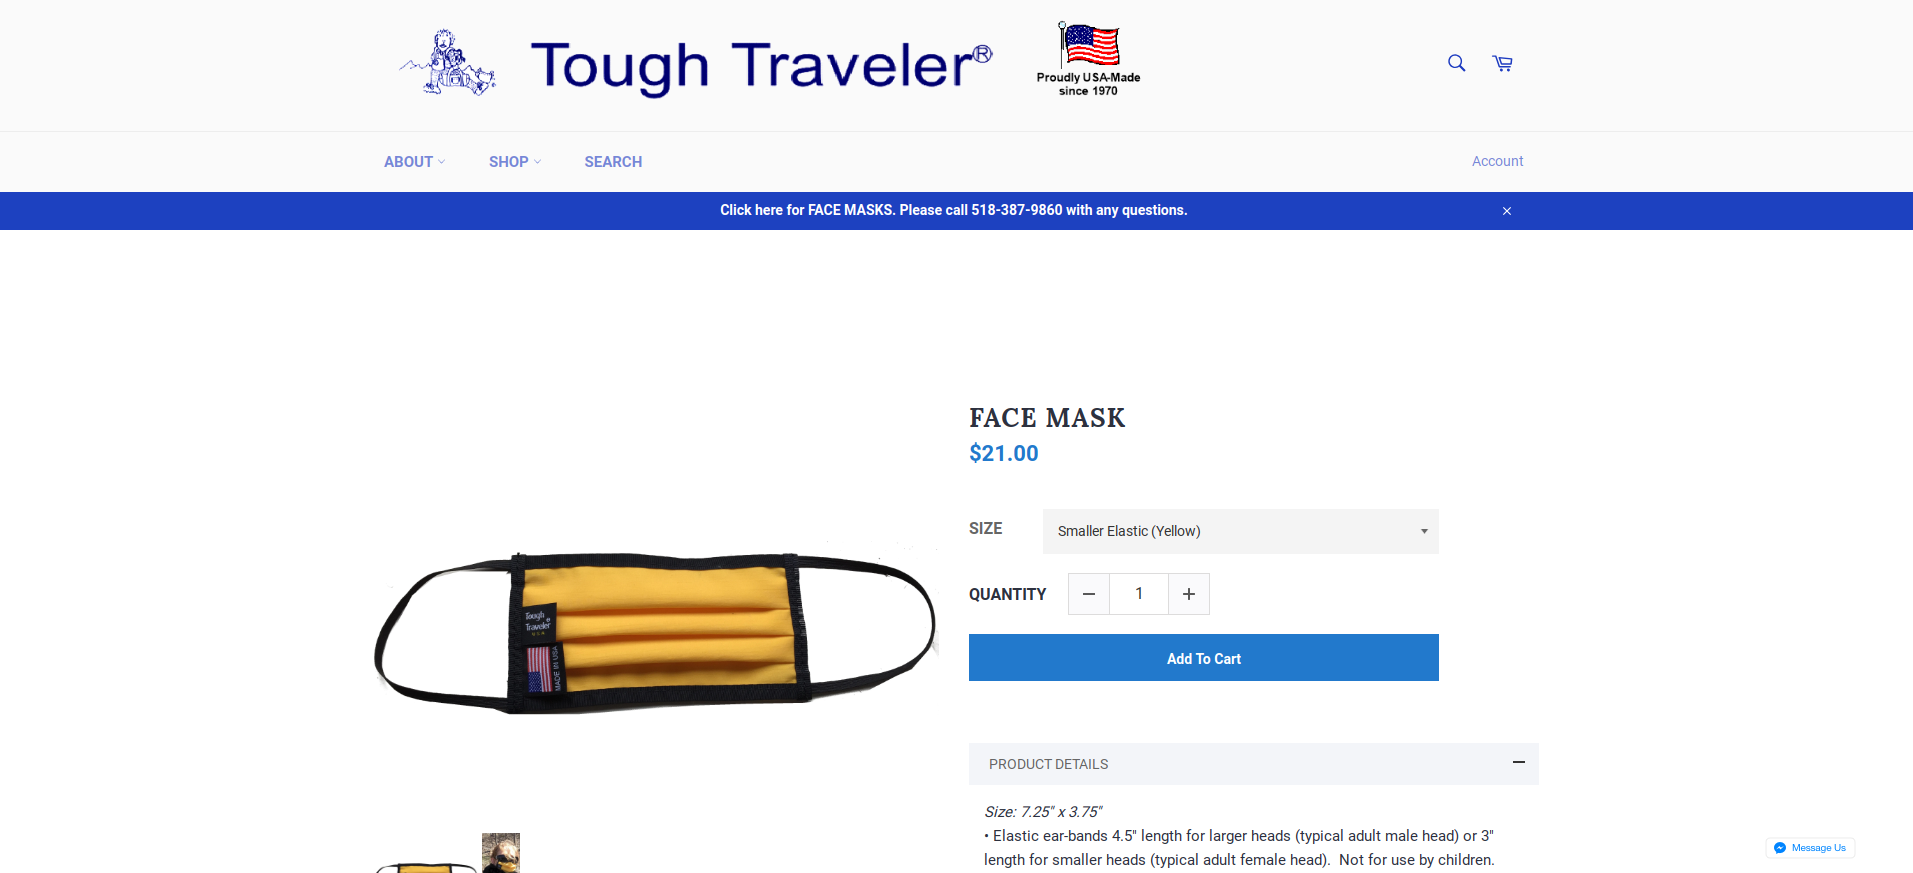 Tough Traveler is now making masks!